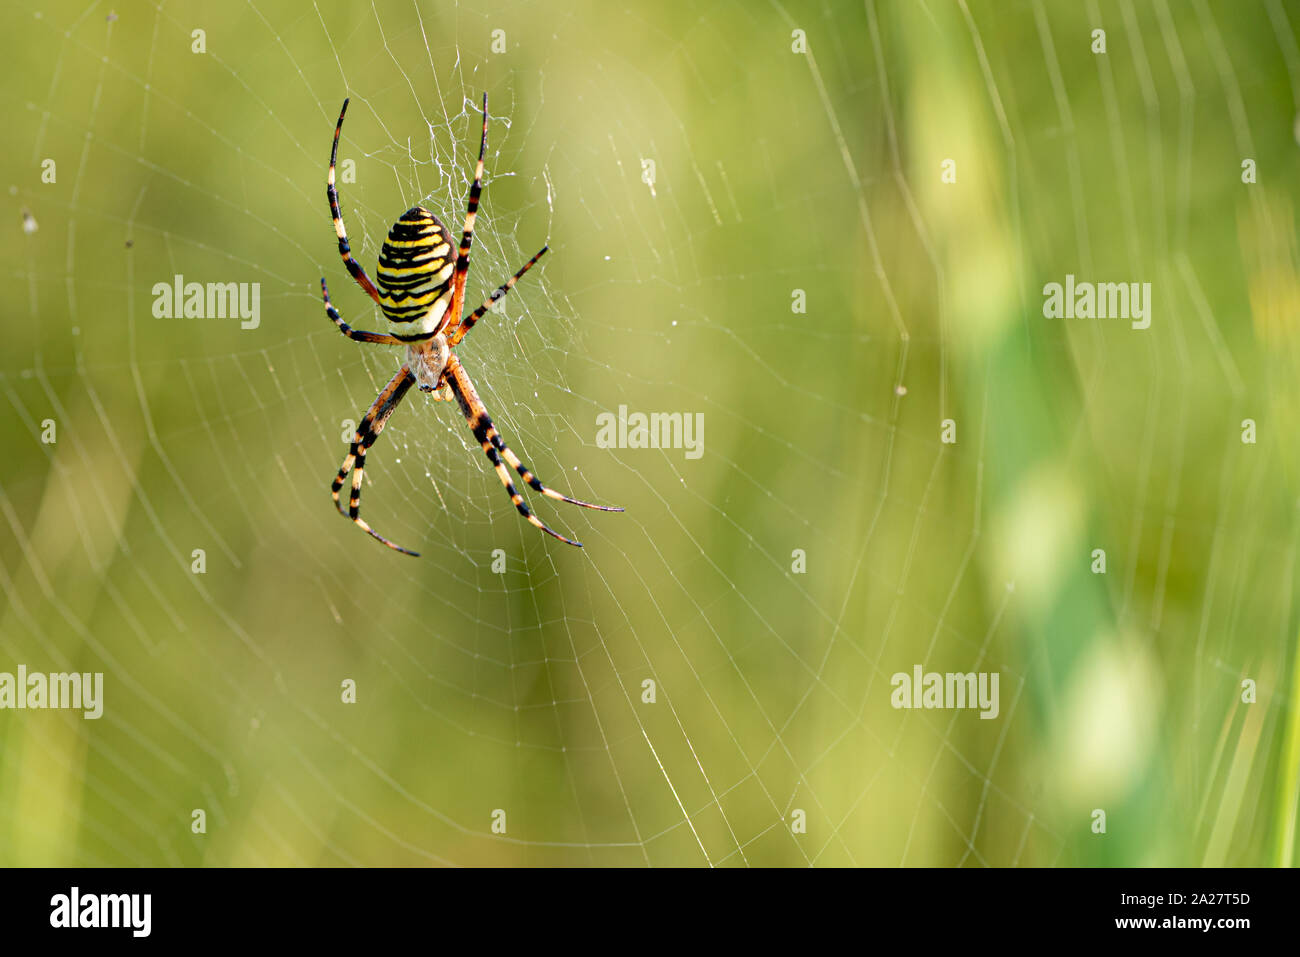 Gelb gestreifte Spinne draußen in der Natur in ihrem Spinnennetz. Argiope  Bruennichi auch Zebra-, Tiger-, Seidenband, Wasp spider Vor unscharfen b  Stockfotografie - Alamy